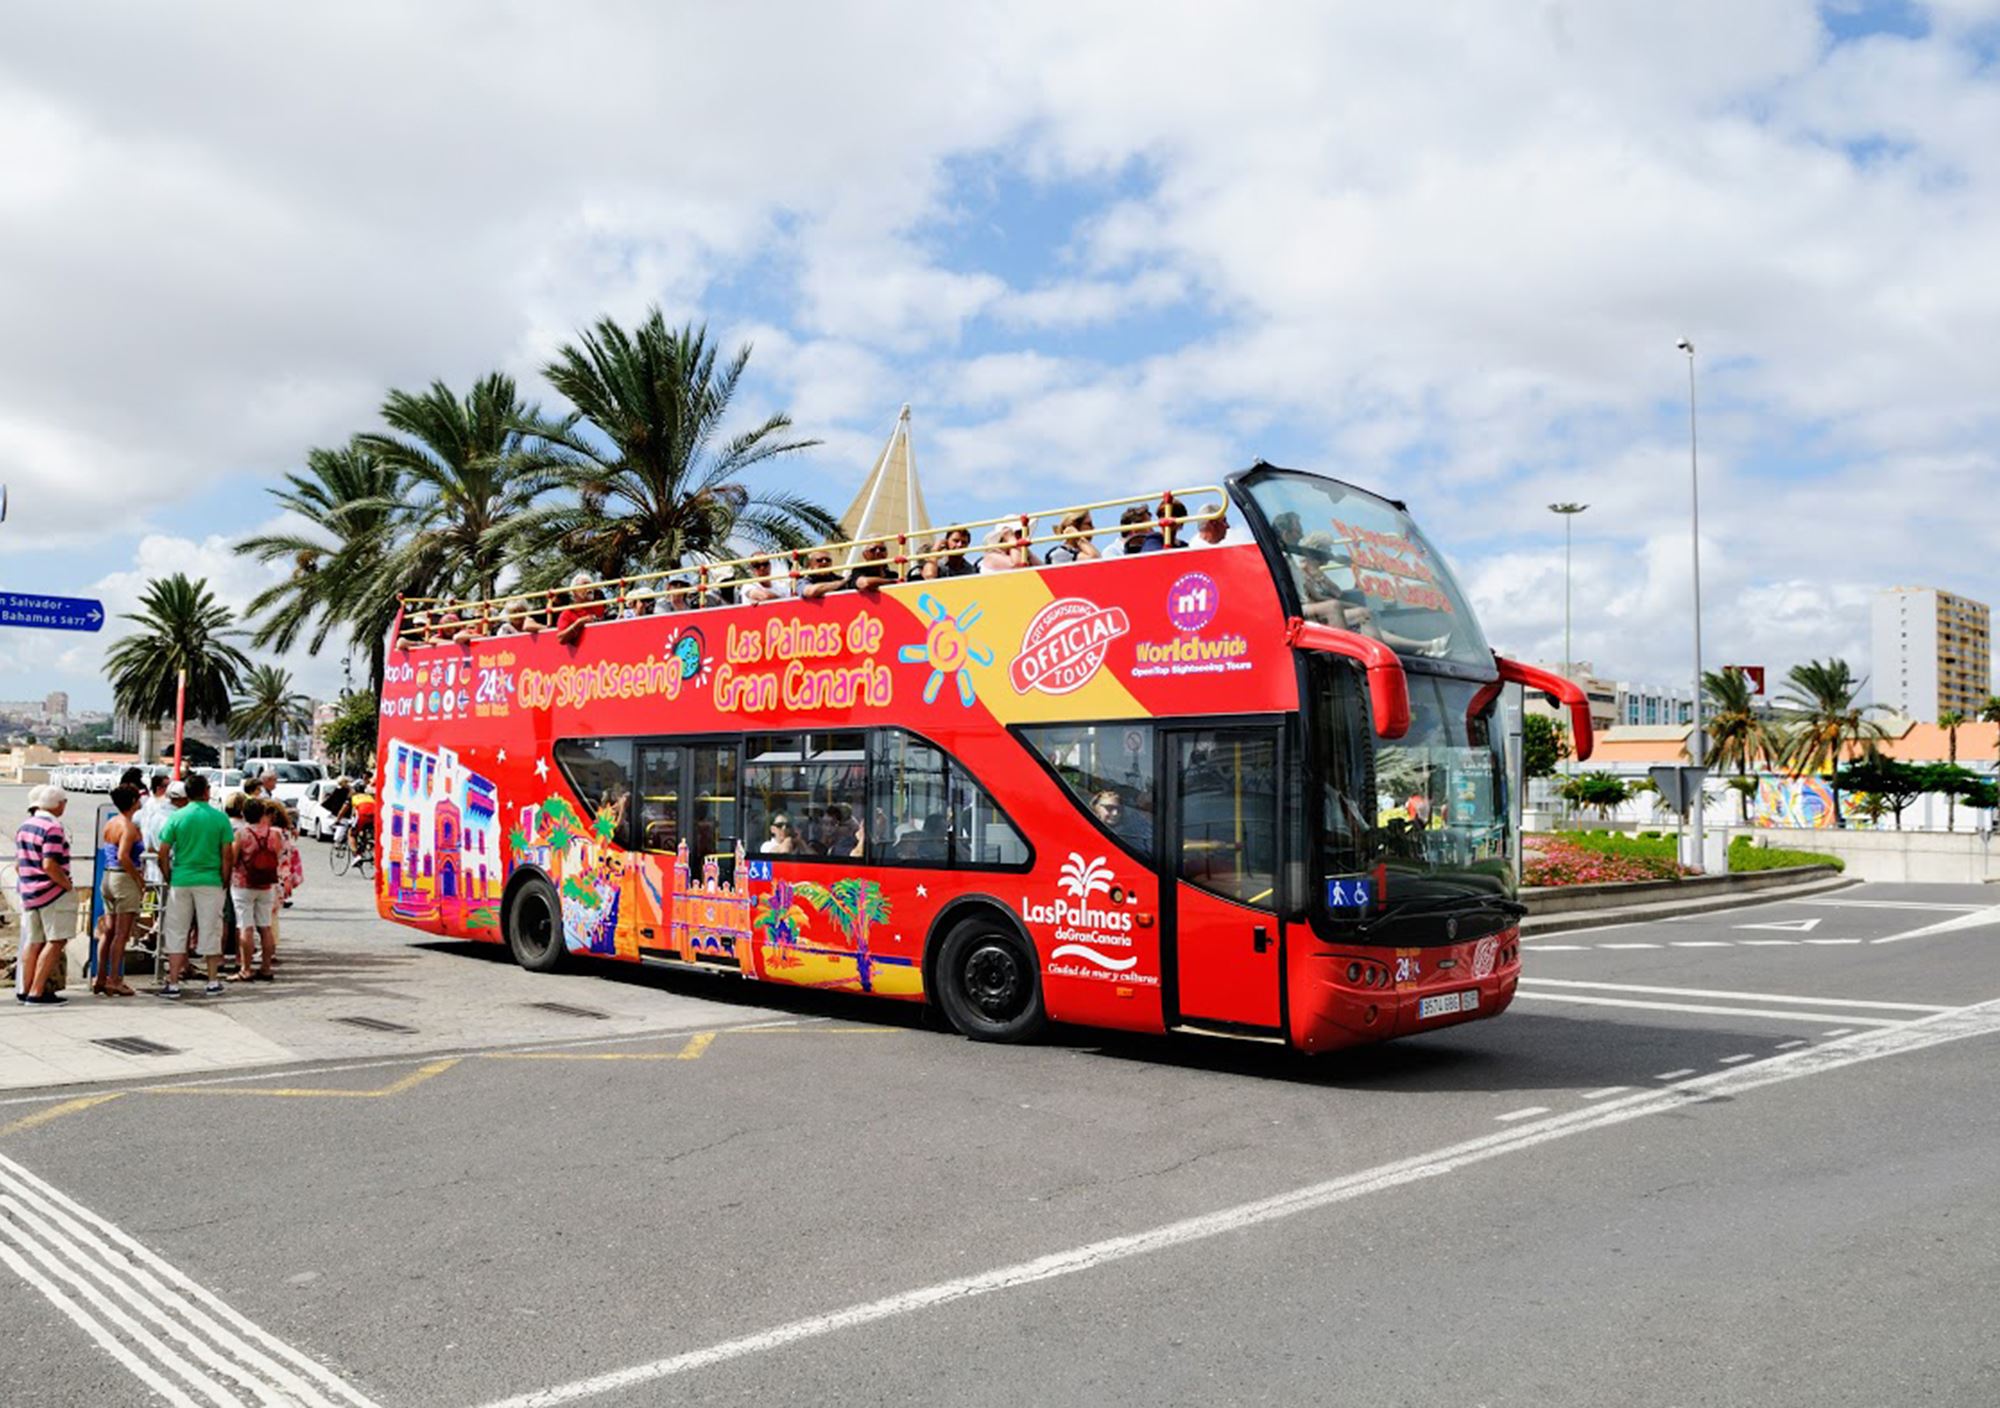 buchung tickets besucht Touren Fahrkarte Eintrittskarten Touristikbus City Sightseeing Gran Canaria